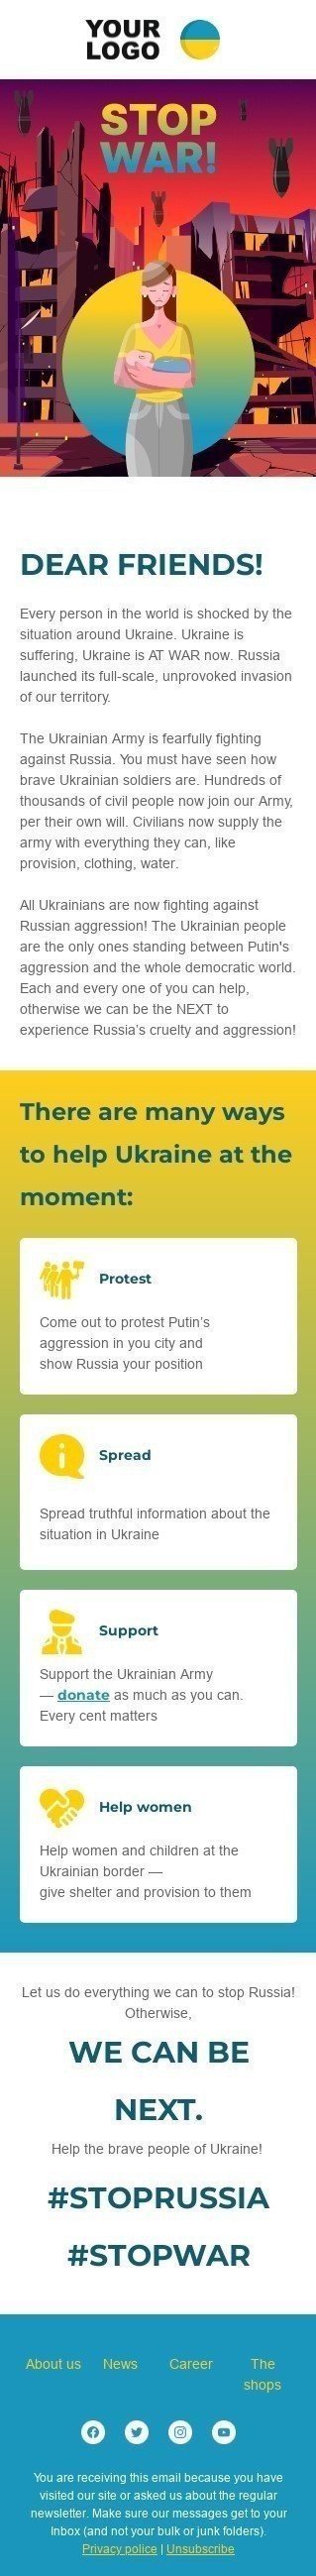 Email-шаблон «Как помочь Украине остановить войну» мобильный вид